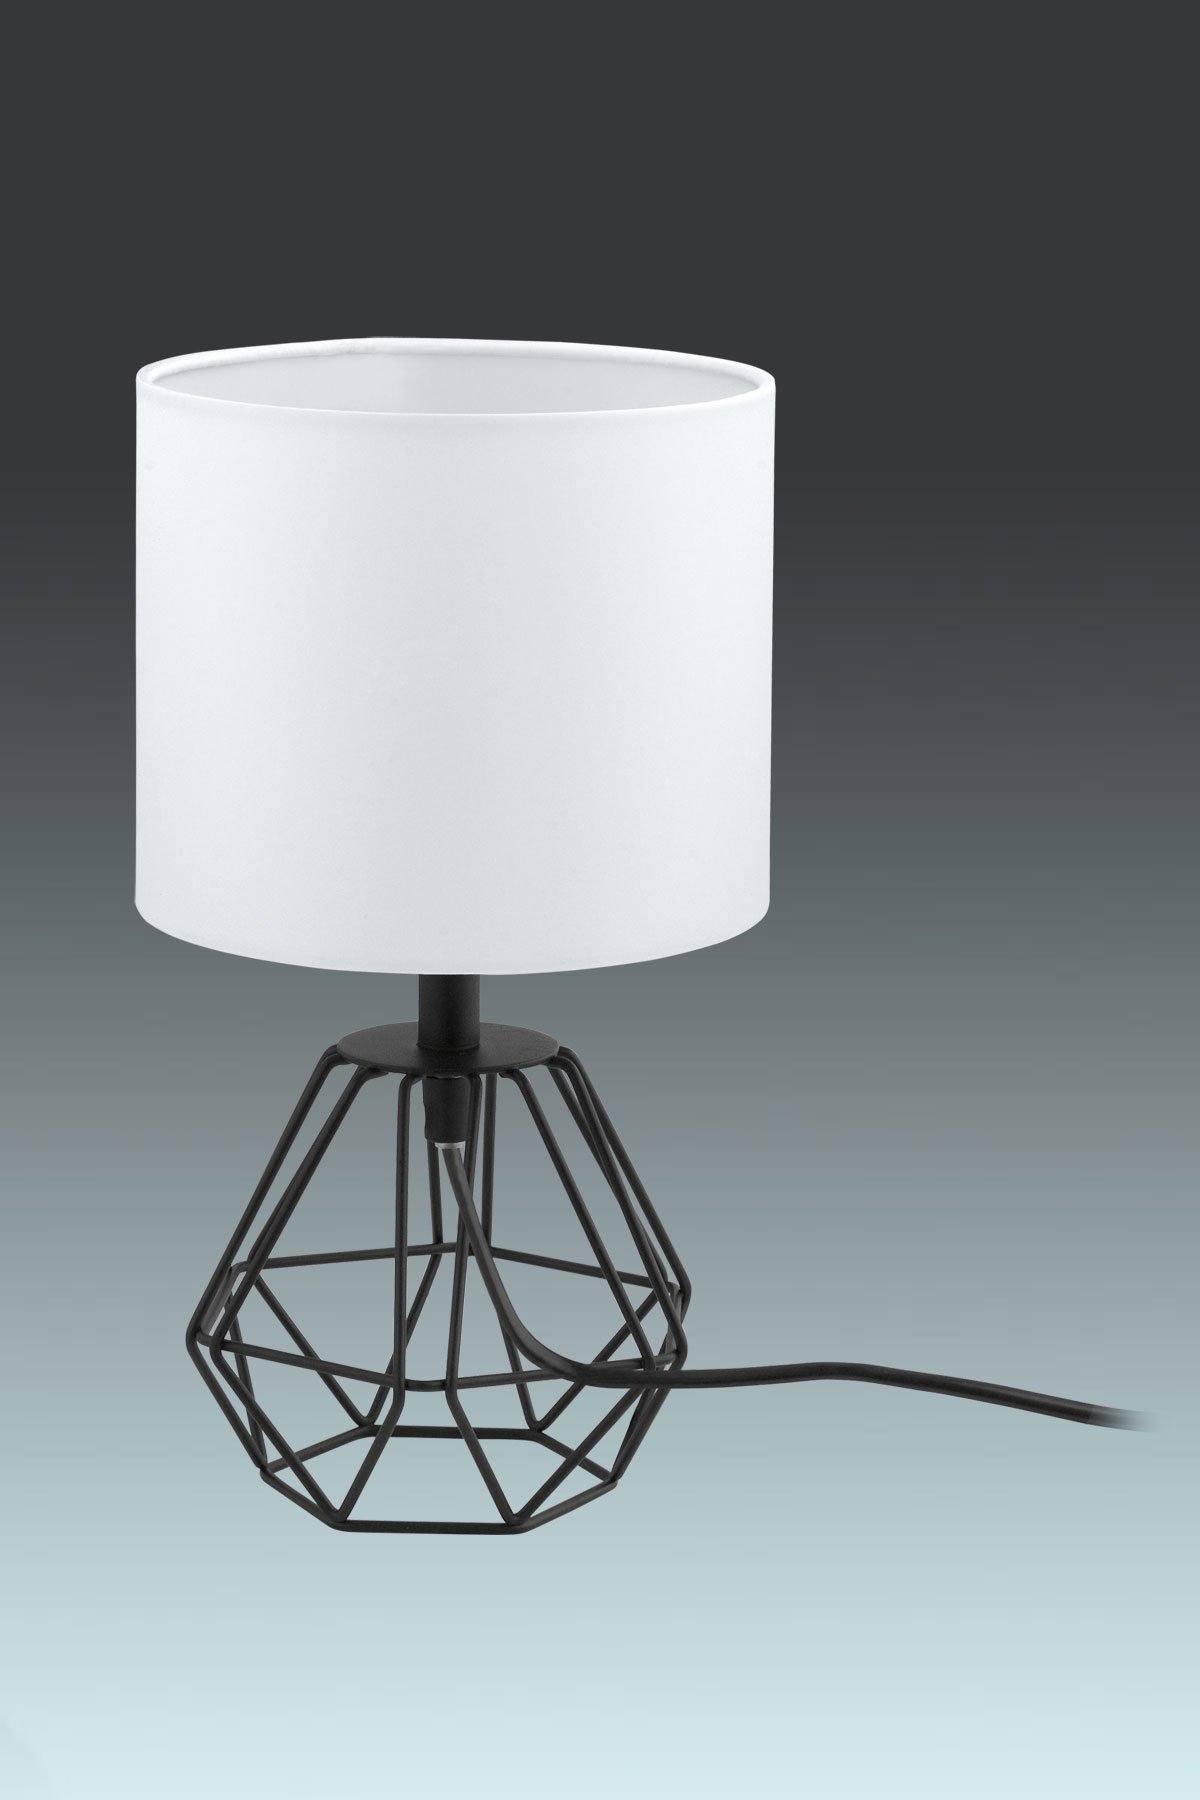   
                        Настільна лампа EGLO (Австрія) 89346    
                         у стилі скандинавський.  
                        Тип джерела світла: cвітлодіодні led, енергозберігаючі, розжарювання.                                                 Кольори плафонів і підвісок: білий.                         Матеріал: тканина.                          фото 1